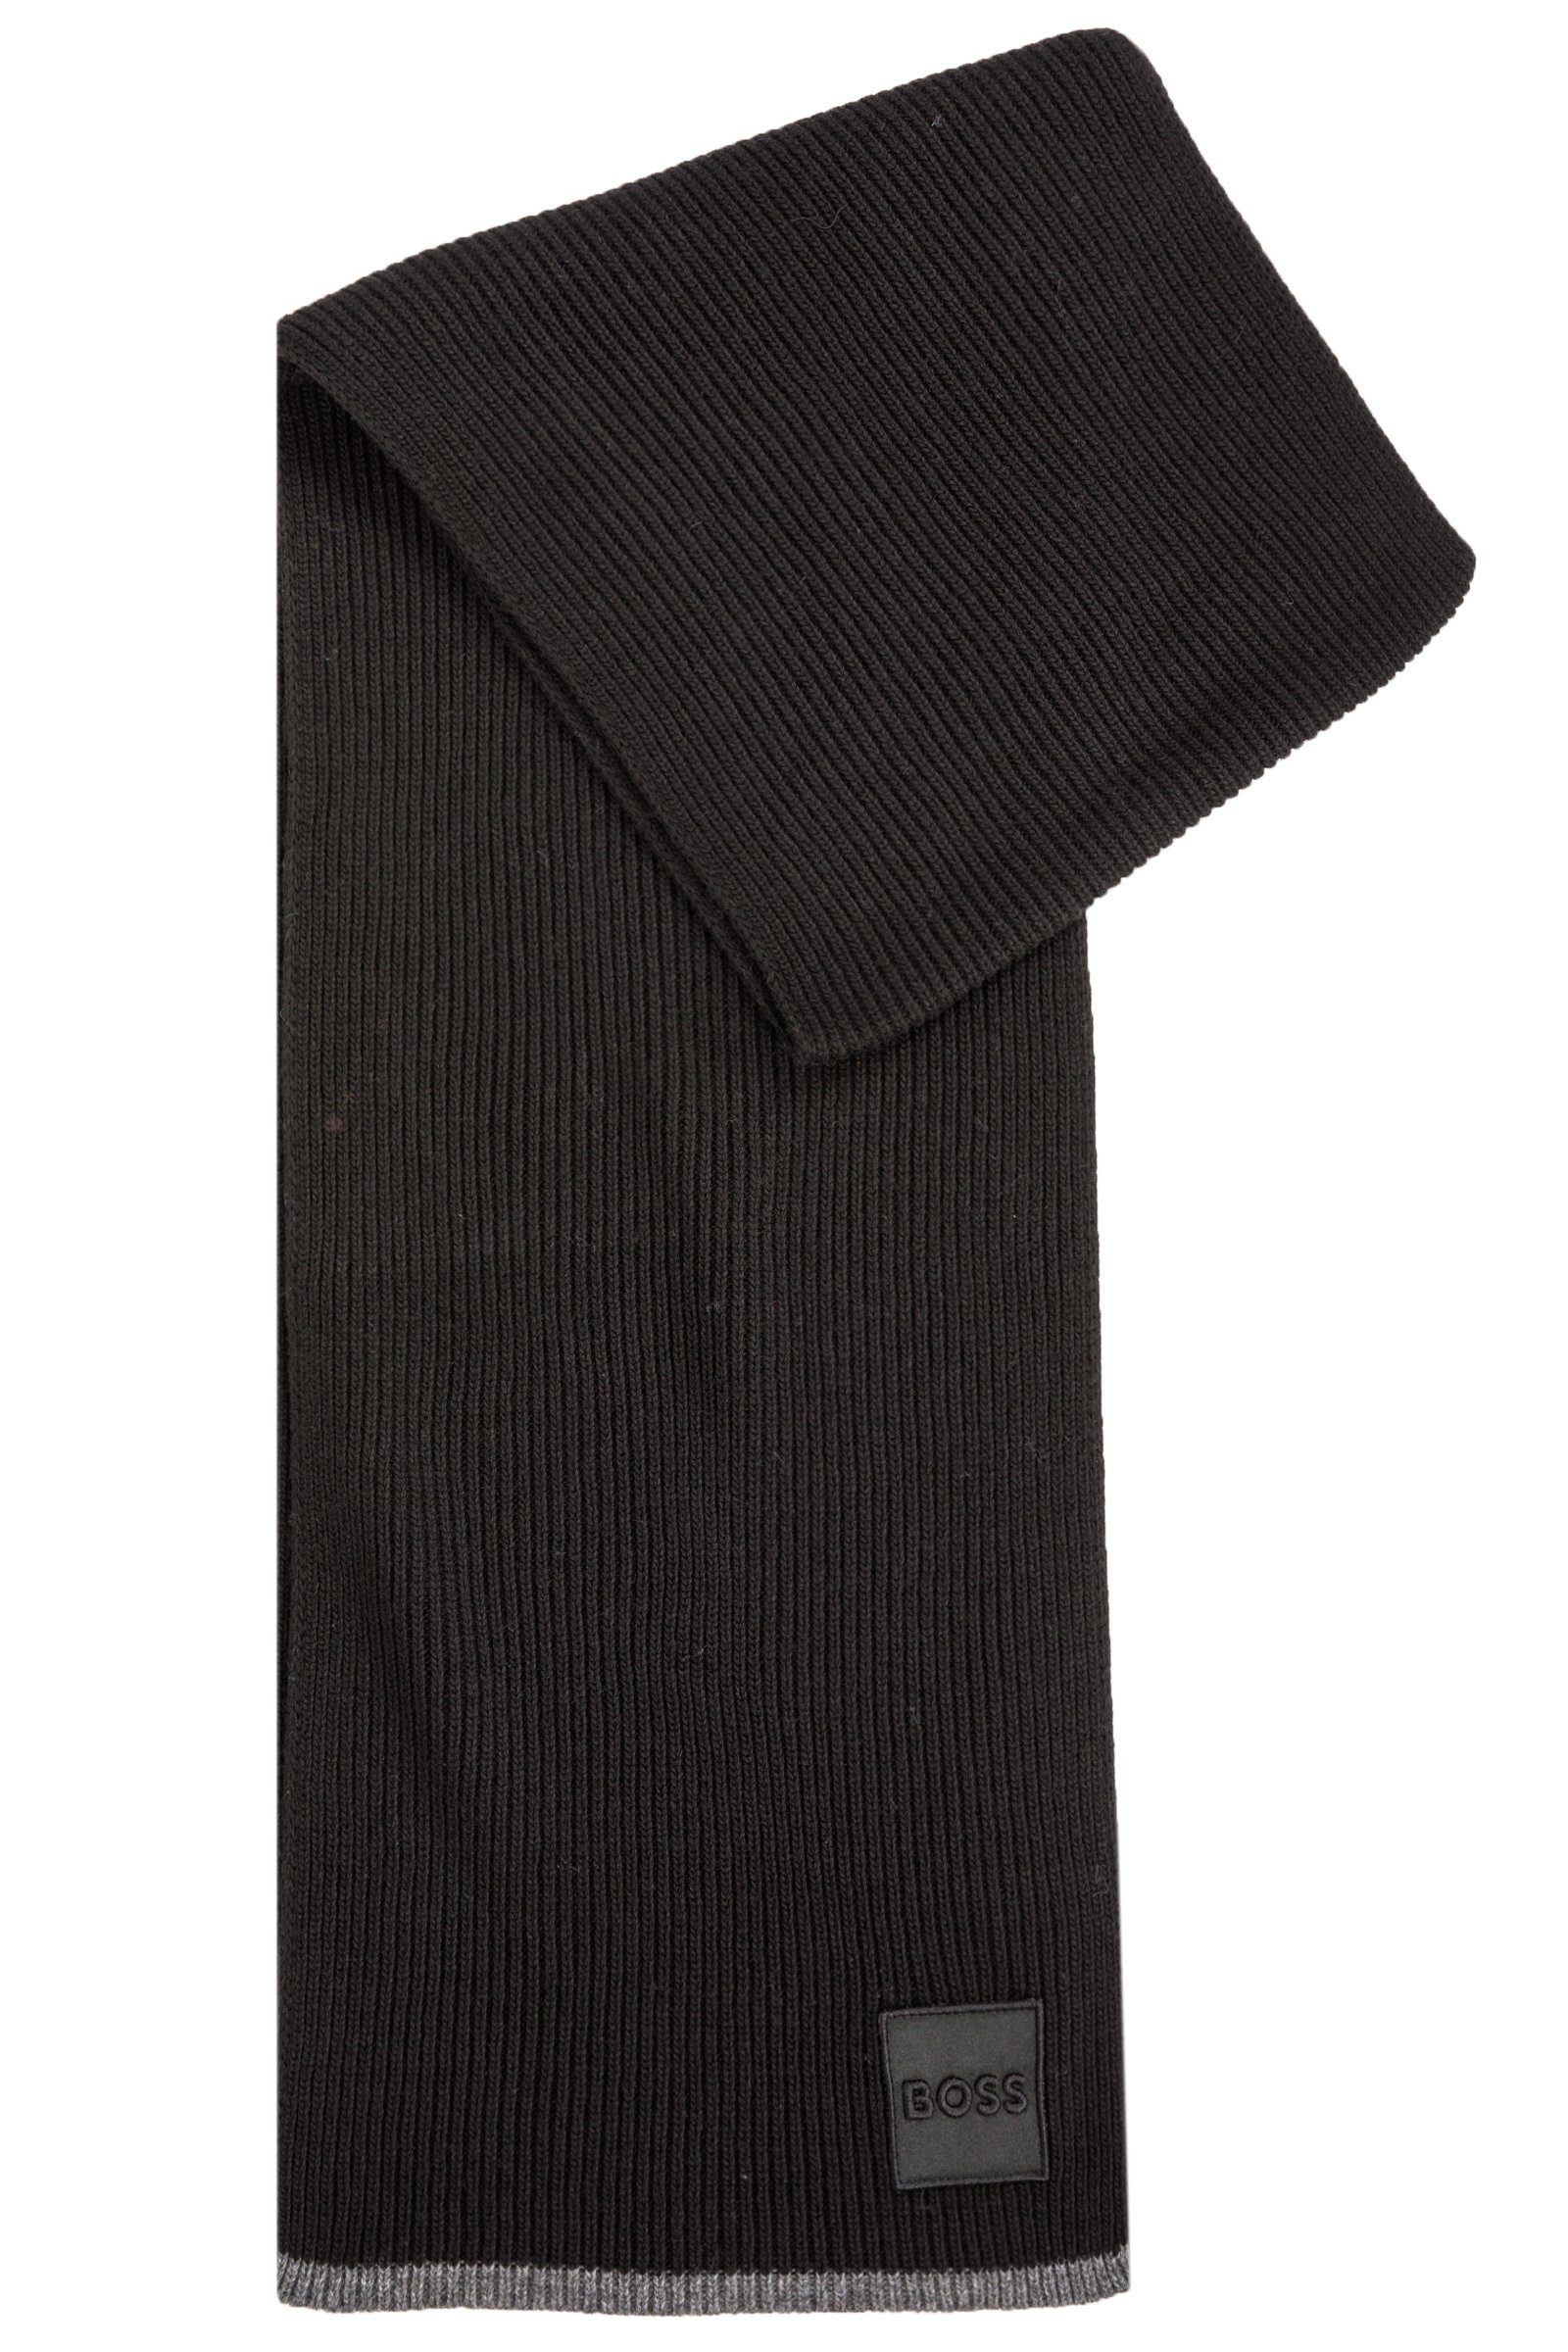 BOSS Schal Myiconic, (keine Angabe, keine Angabe) Schwarz (001) | Modeschals